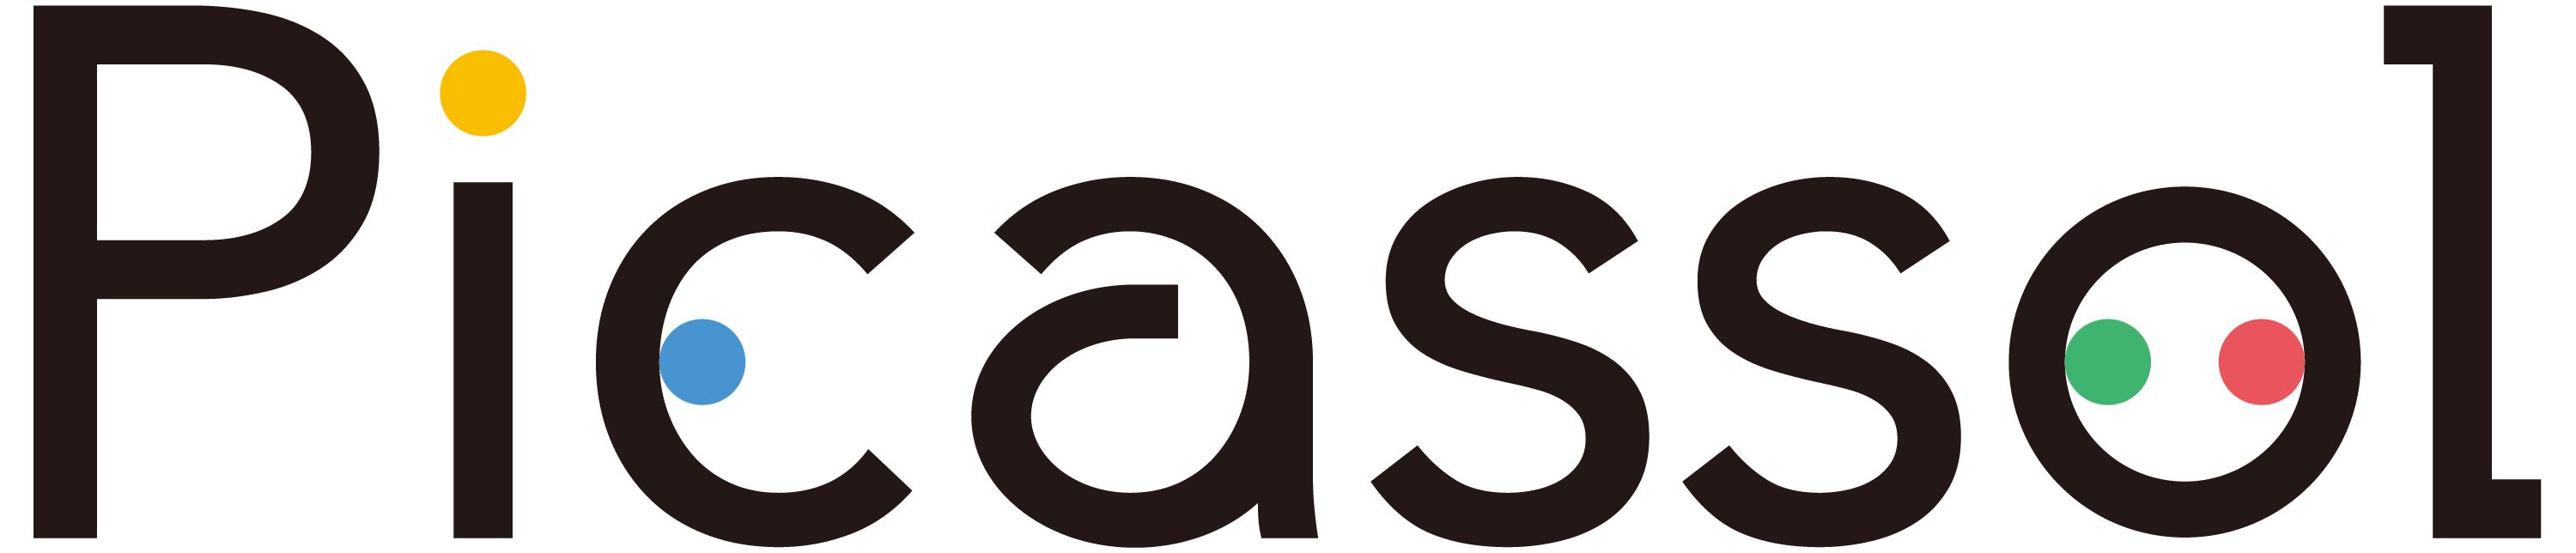 Picassol-logo